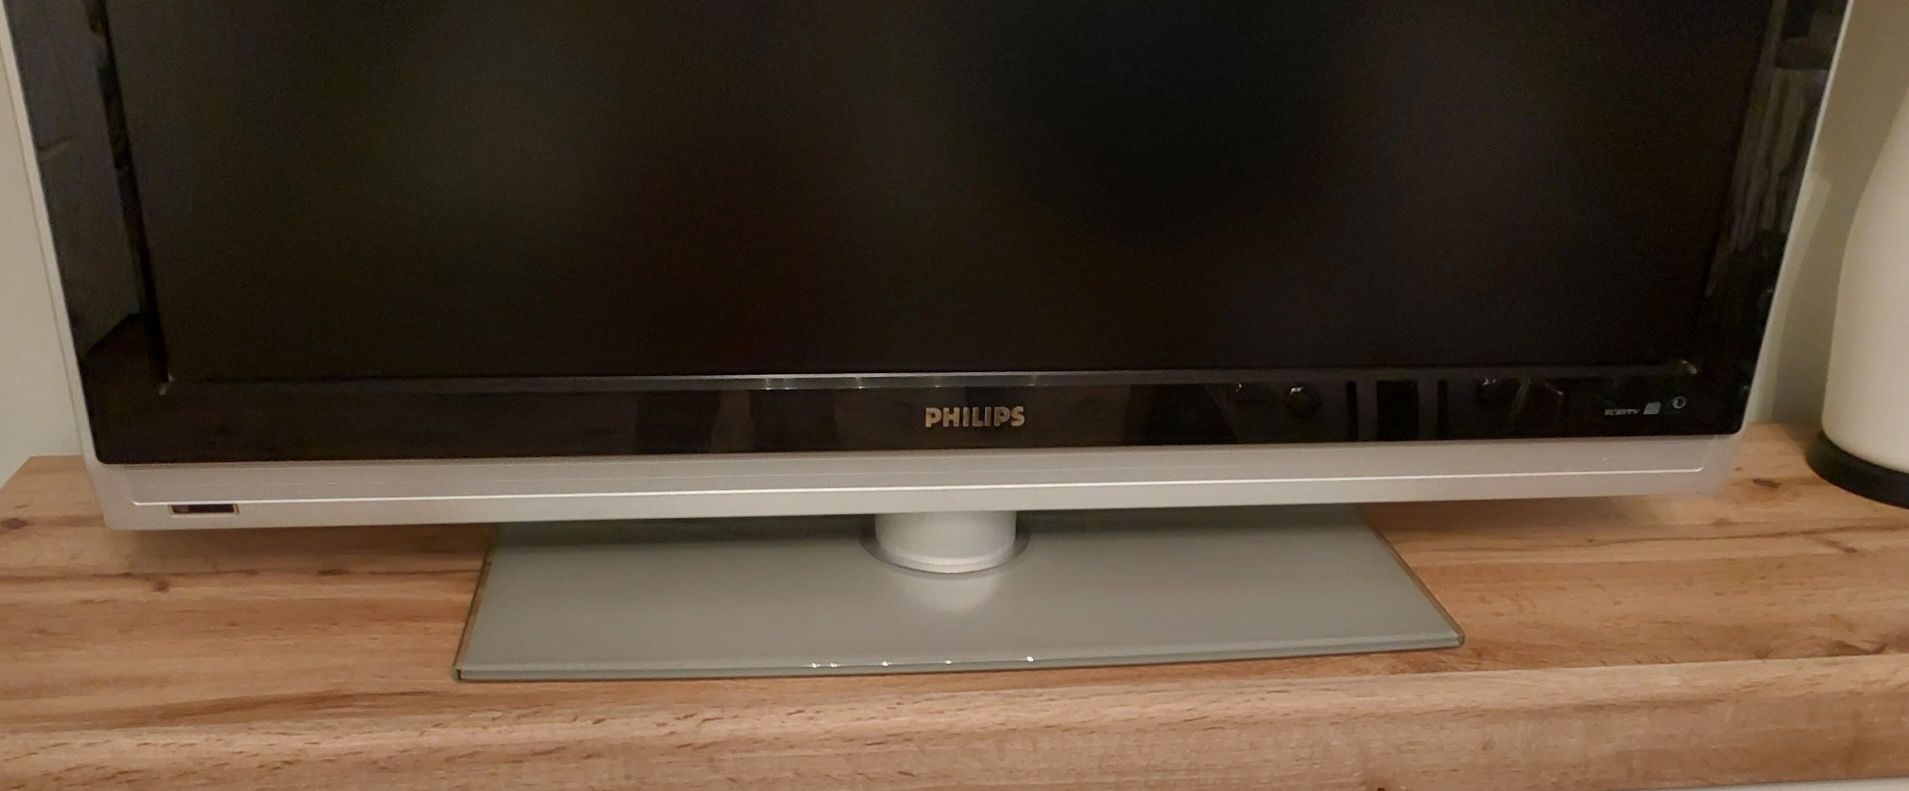 Telewizor Philips Stan idealny